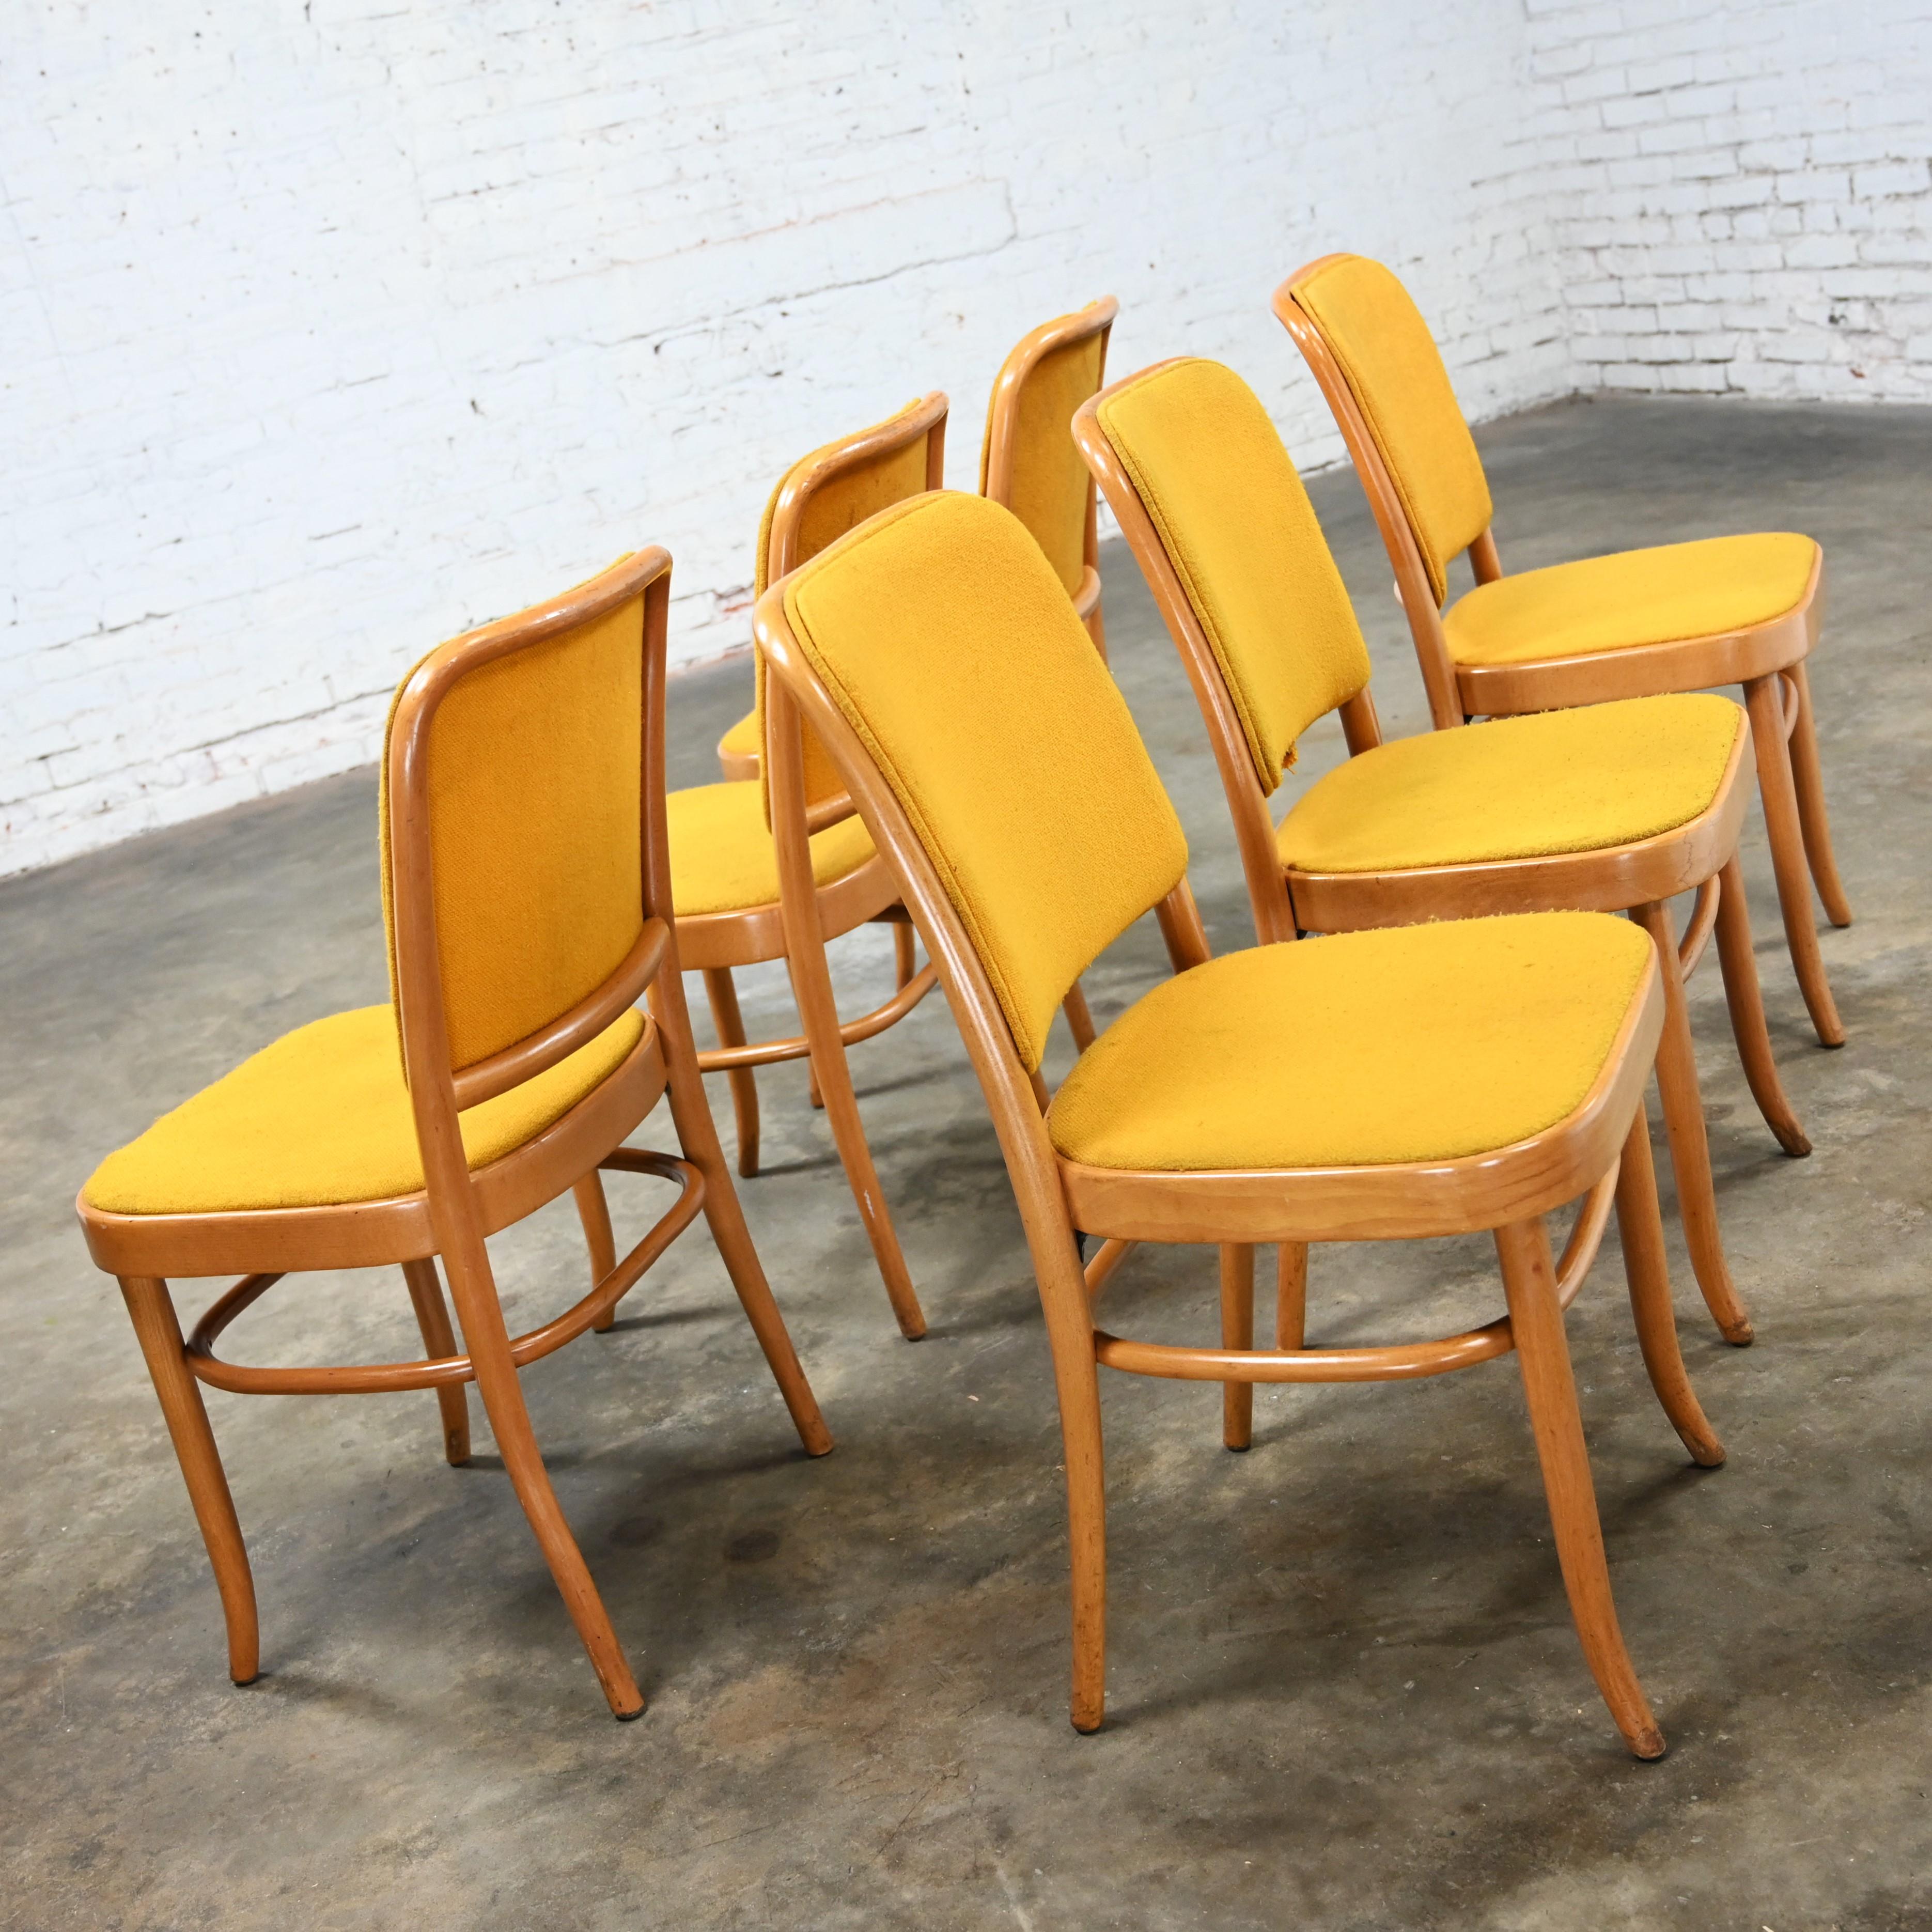 Merveilleuses chaises de salle à manger sans accoudoirs en hêtre courbé de style Thonet Josef Hoffman Prague 811 par Falcon Products Inc, ensemble de 6. Très bon état, en gardant à l'esprit qu'il s'agit de chaises vintage et non pas neuves et